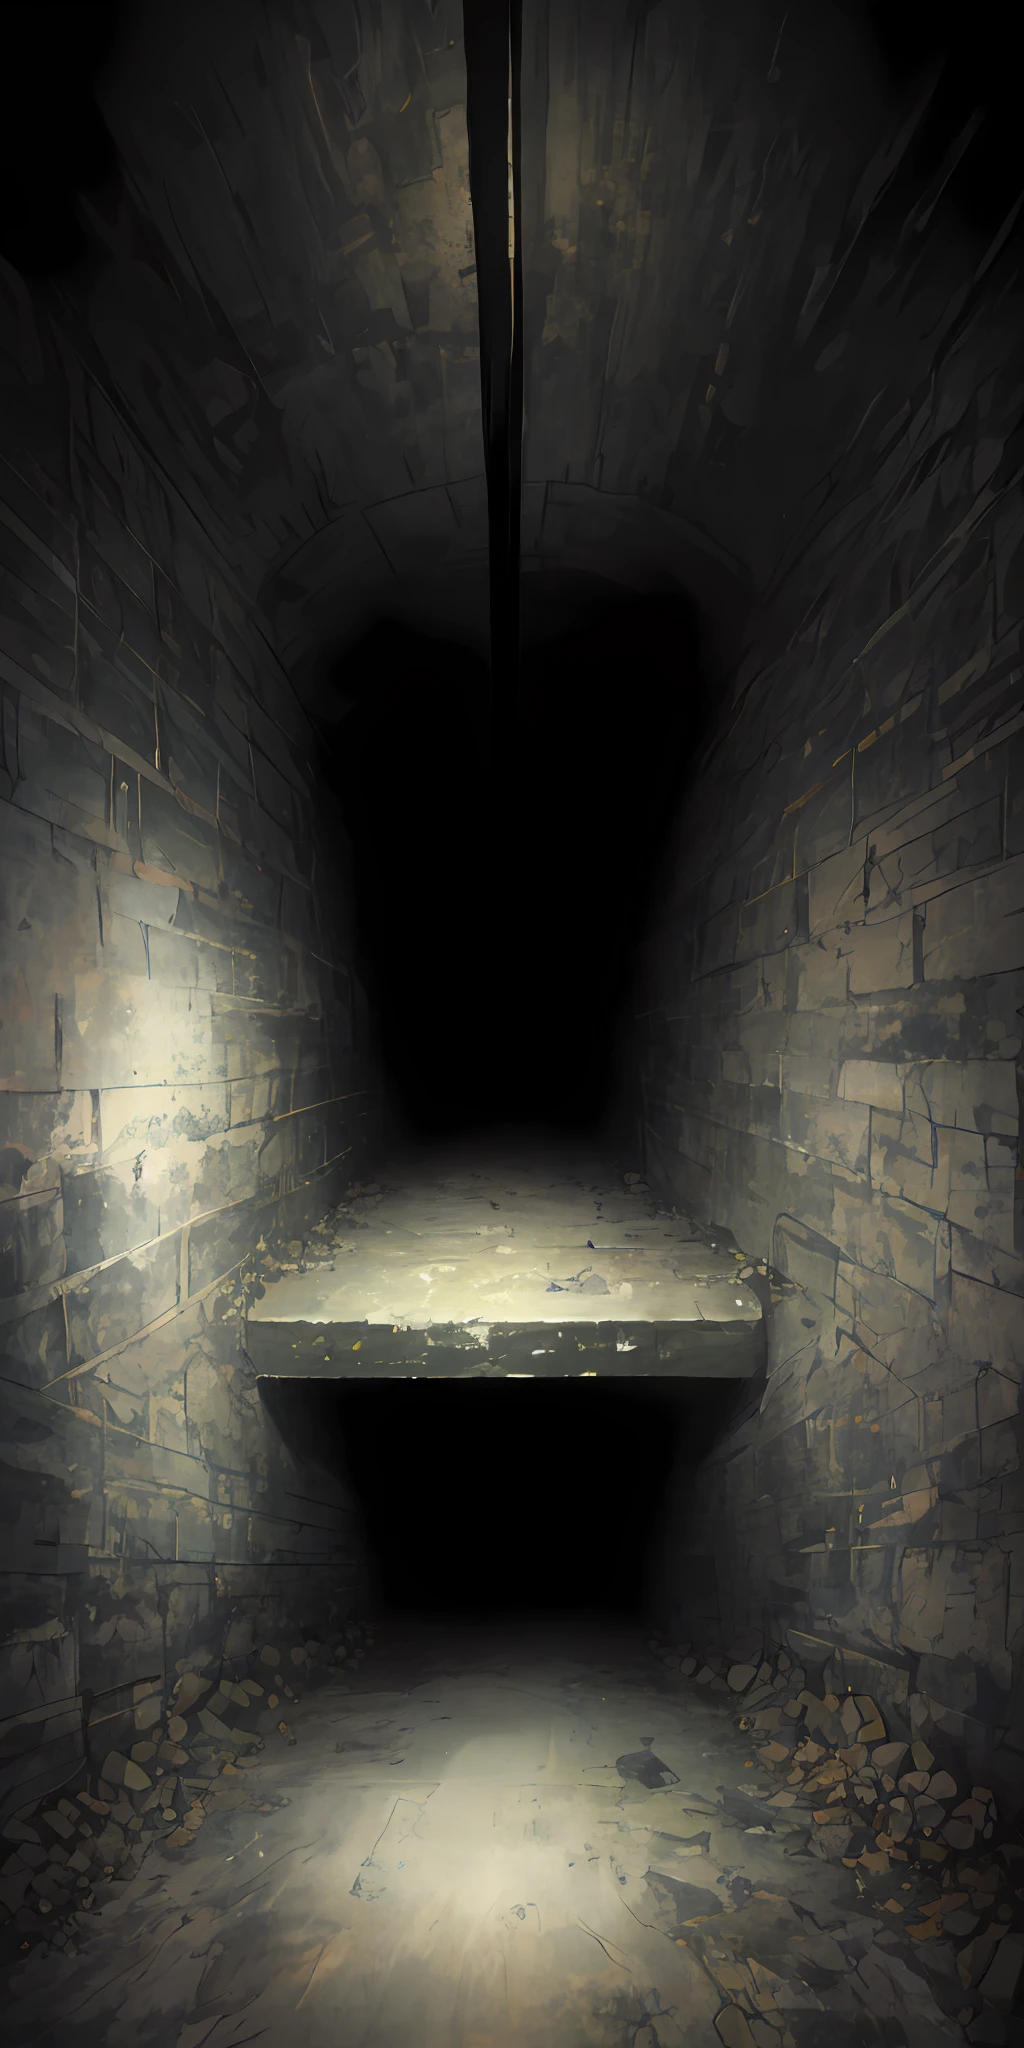 geheimnisvoll, unheimlich, schwarzgrau, Schattig, in unterirdischen Tunneln